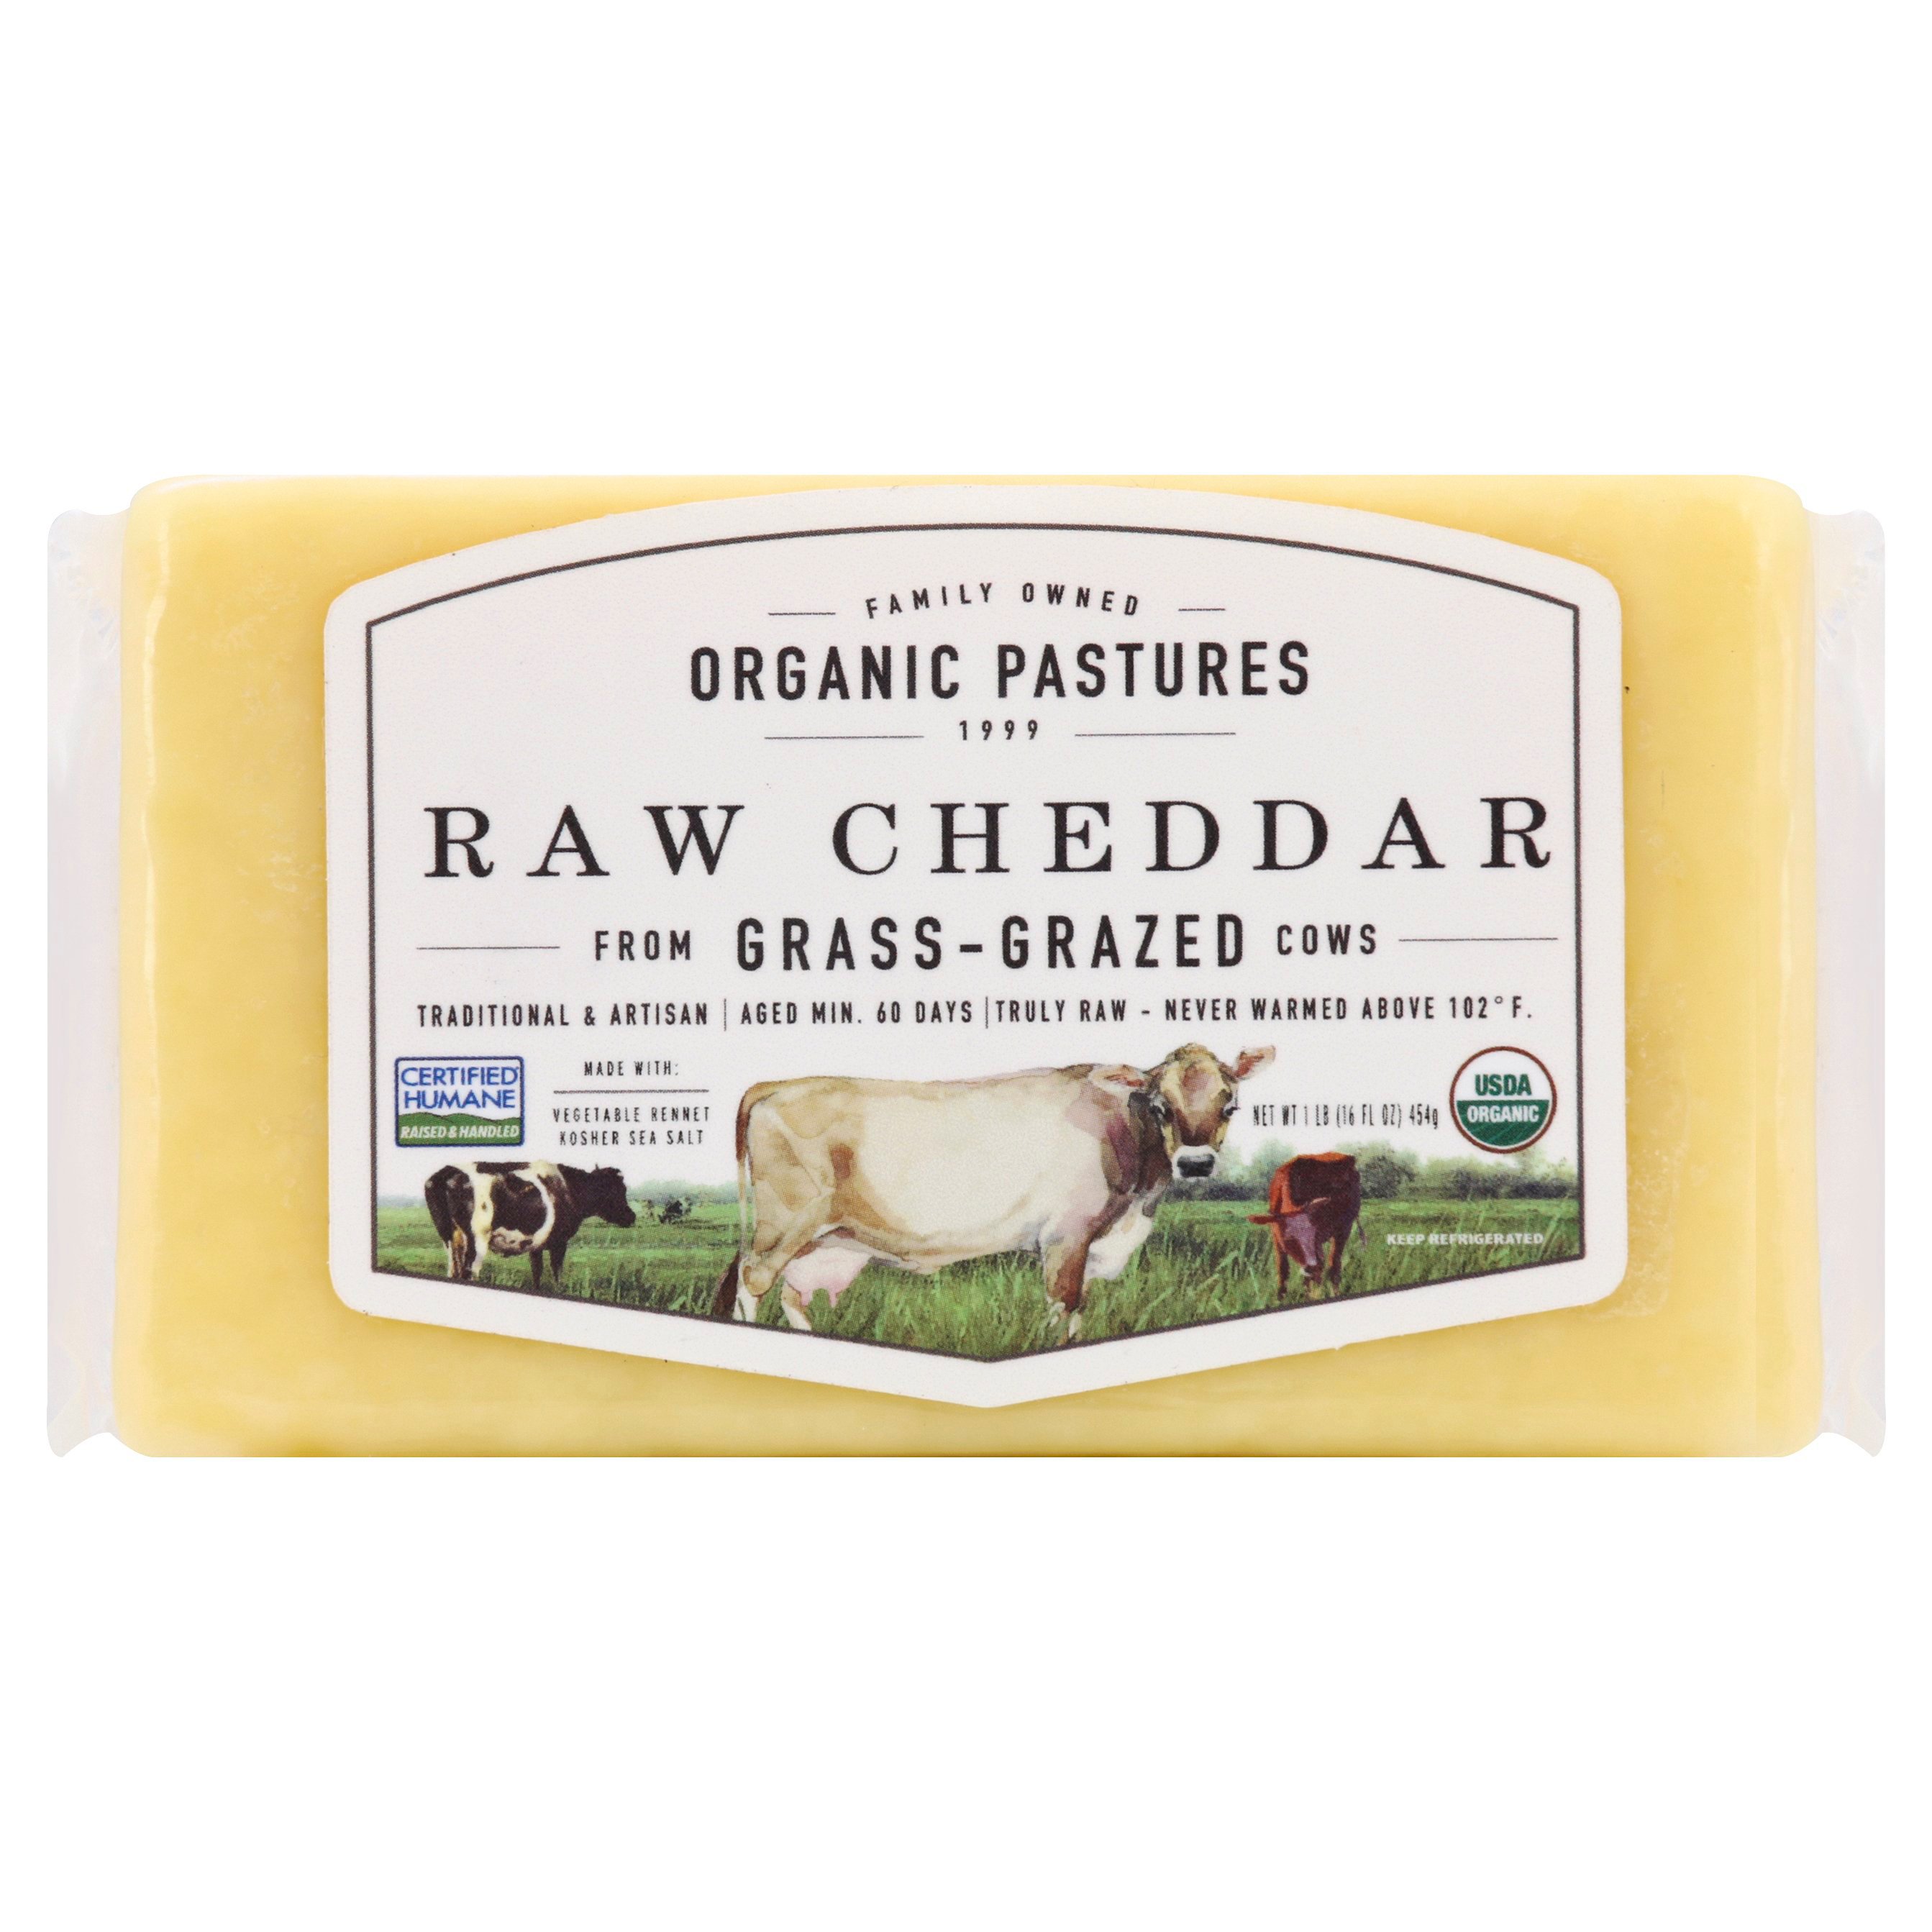 Organic Pastures Raw Cheddar Cheese Chunk - Shop Cheese at H-E-B